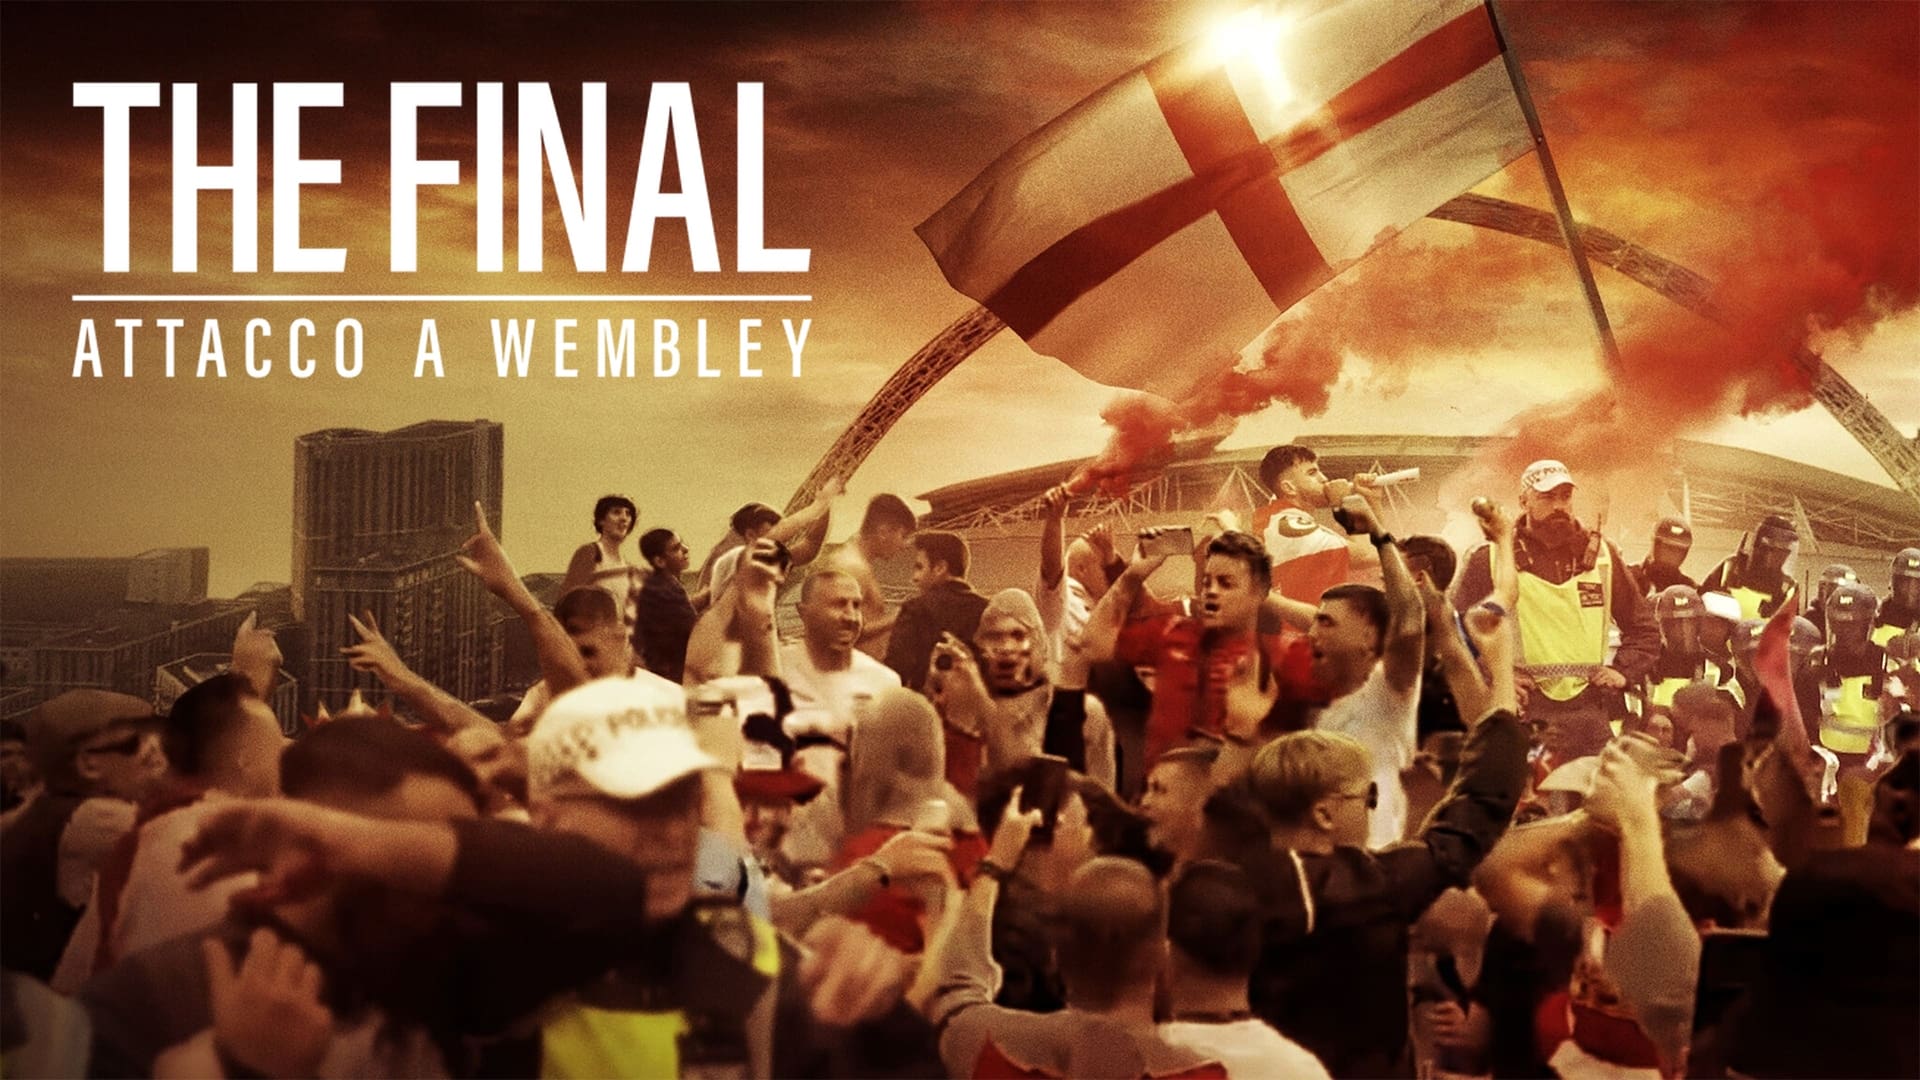 La final: Caos en Wembley (2024)